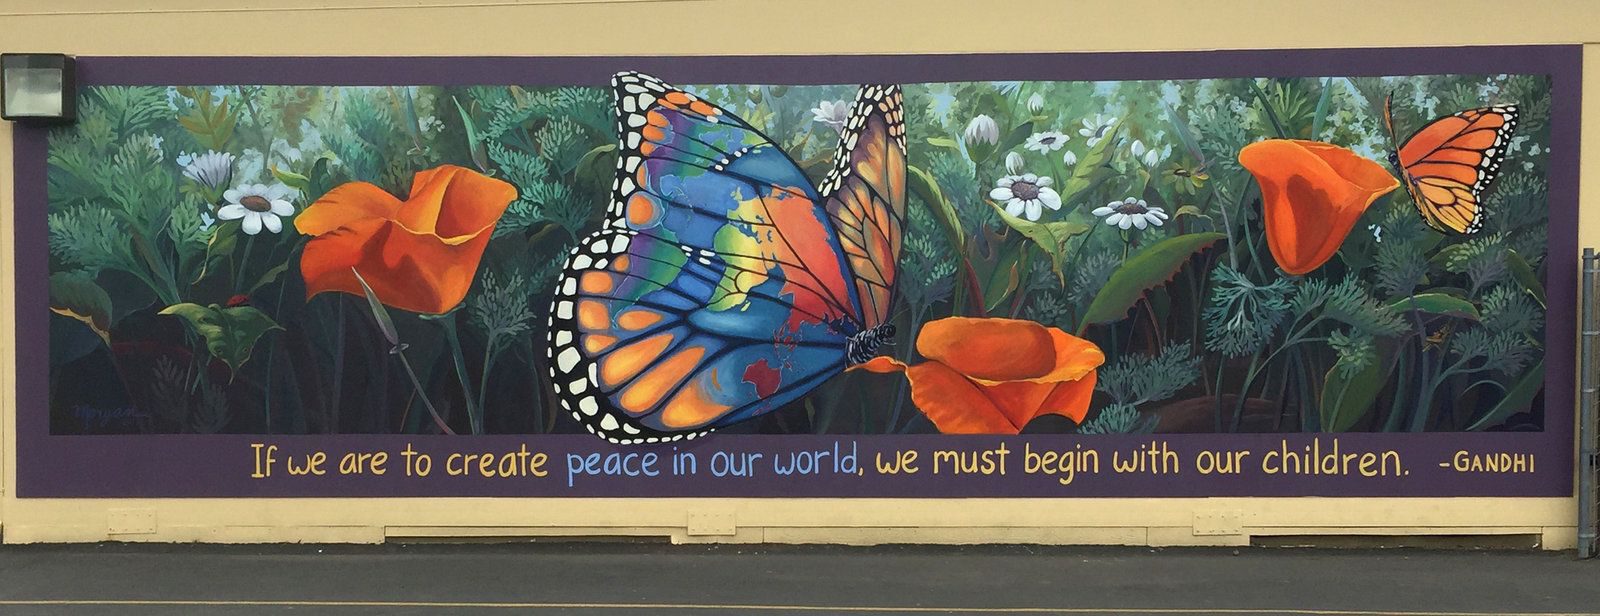 Peace in Our World, Oak Elementary School